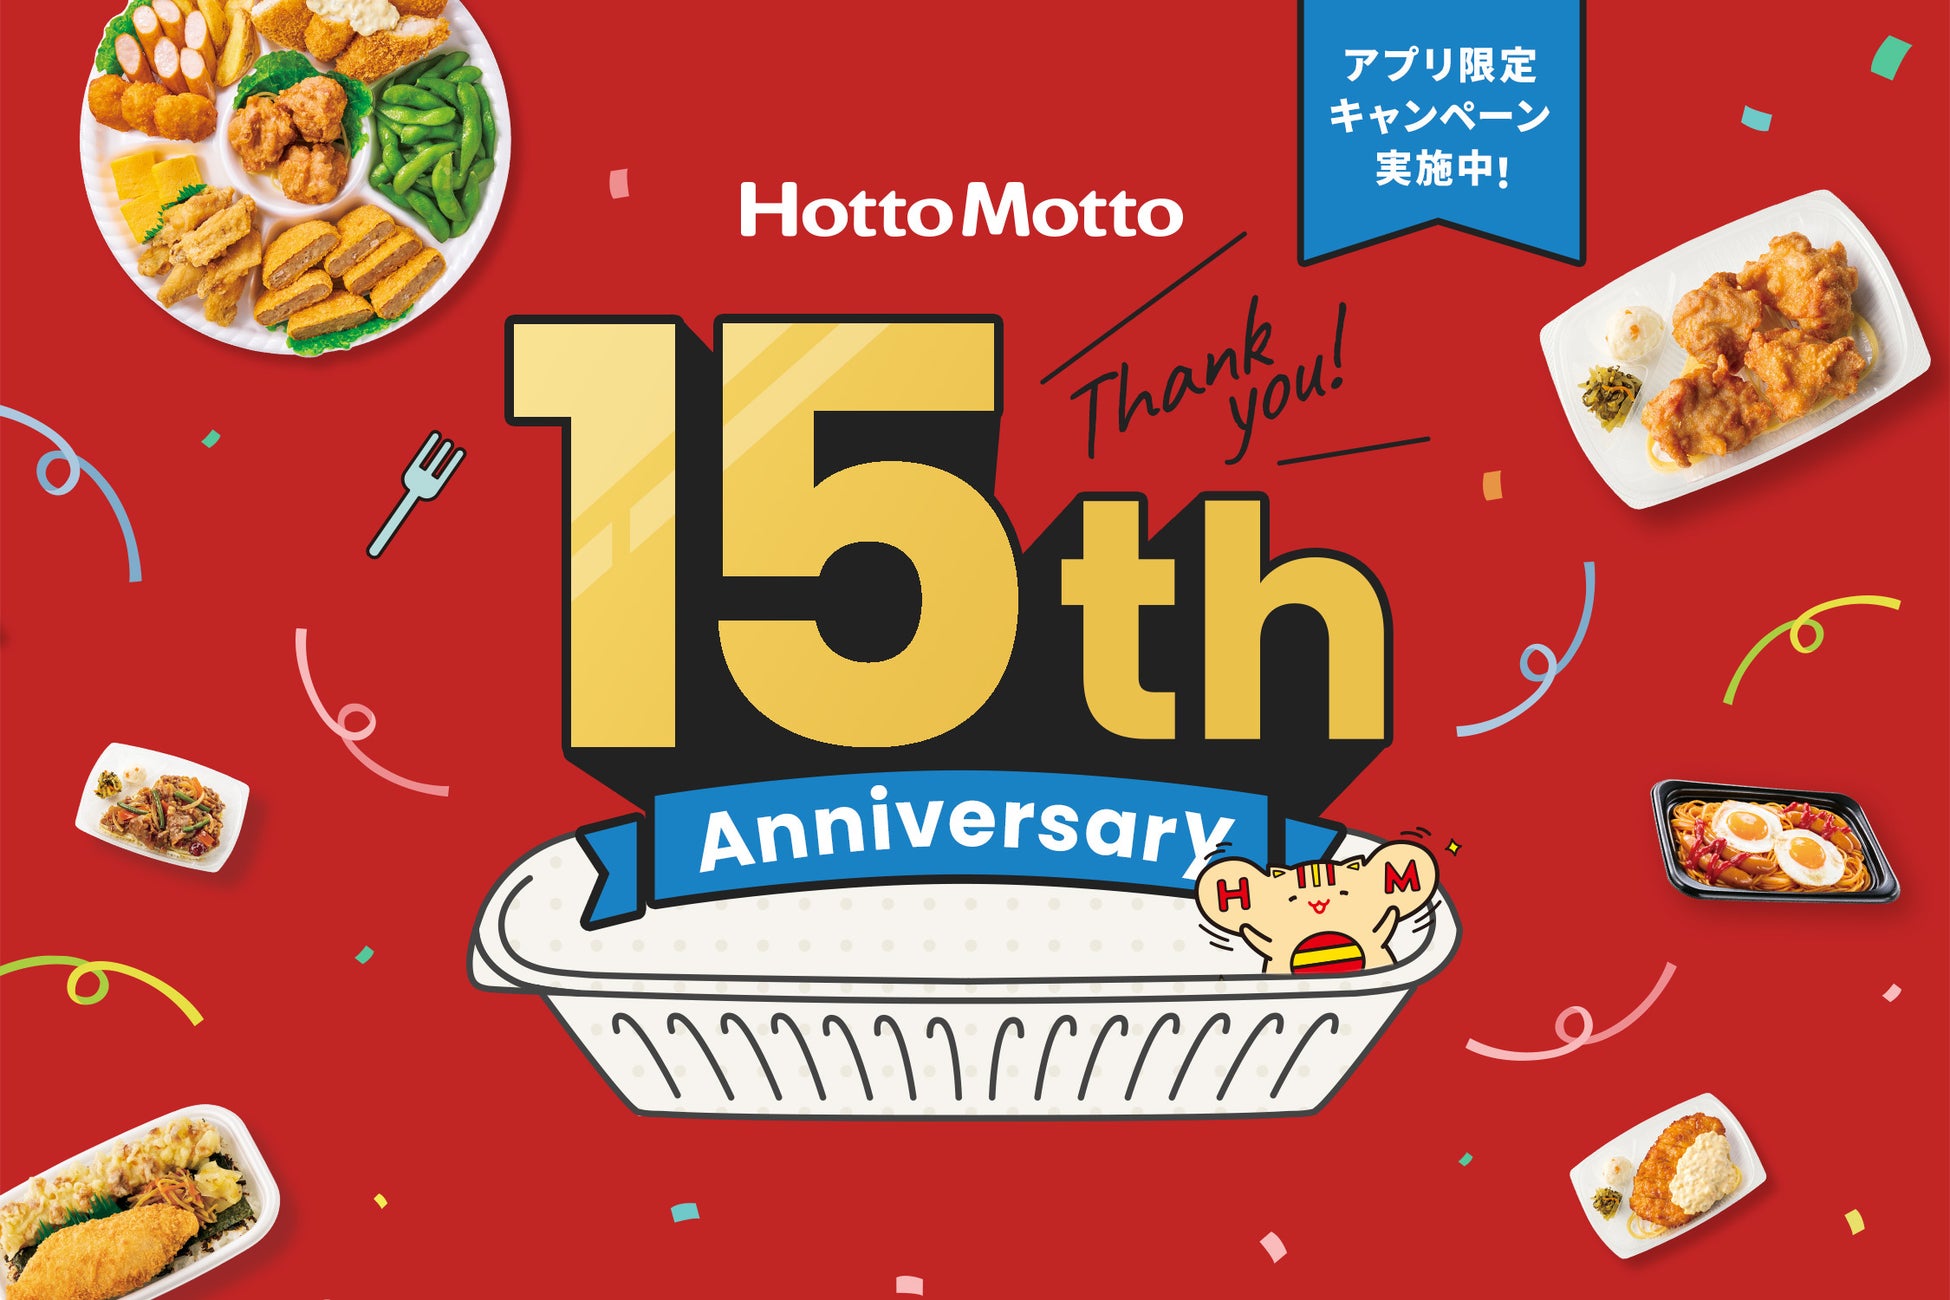 「ほっともっと」は５月15日で15周年！５月はキャンペーンが盛りだくさんな「Hotto Motto 15th Anniversary month」15周年スペシャルサイトが本日公開